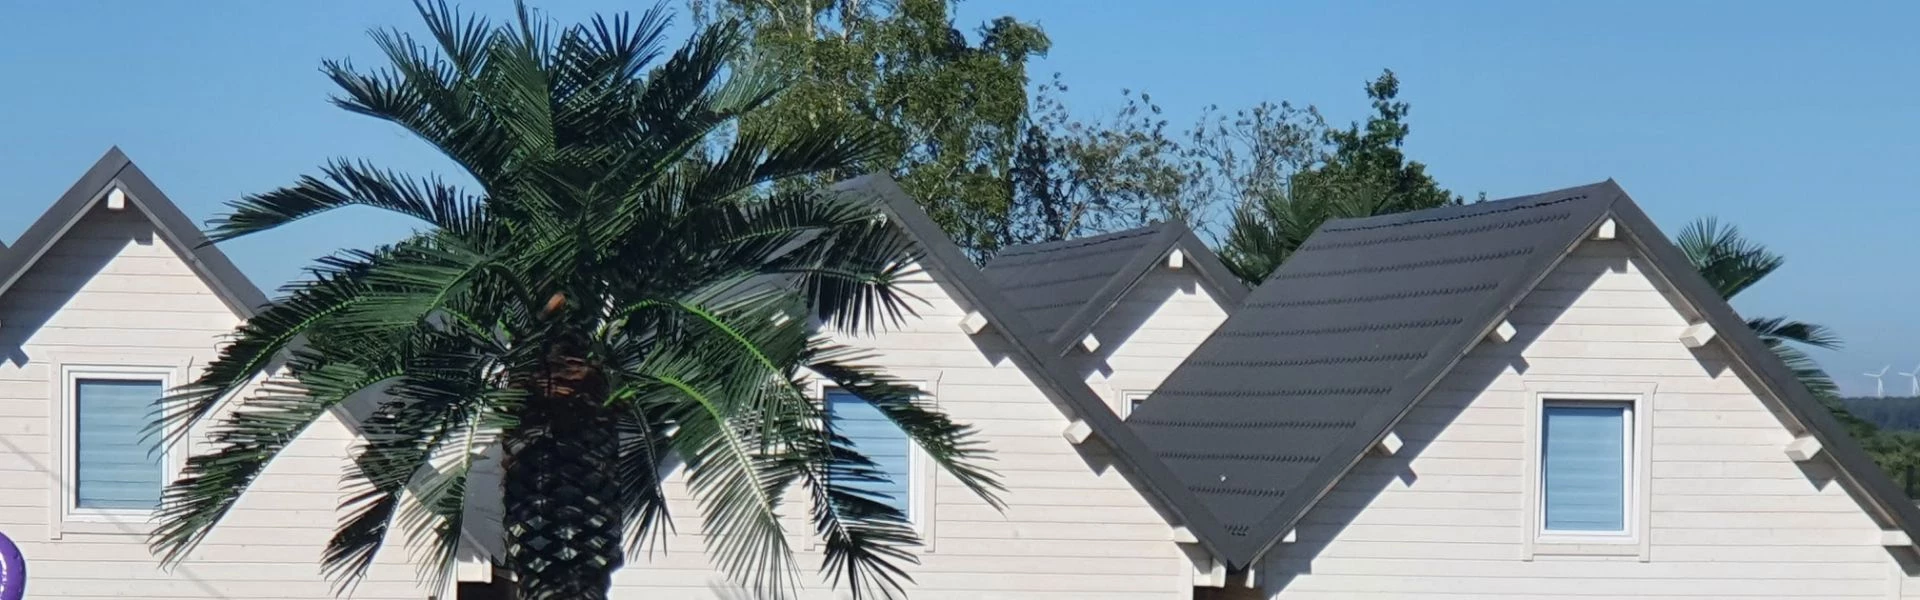 Domki z palmą